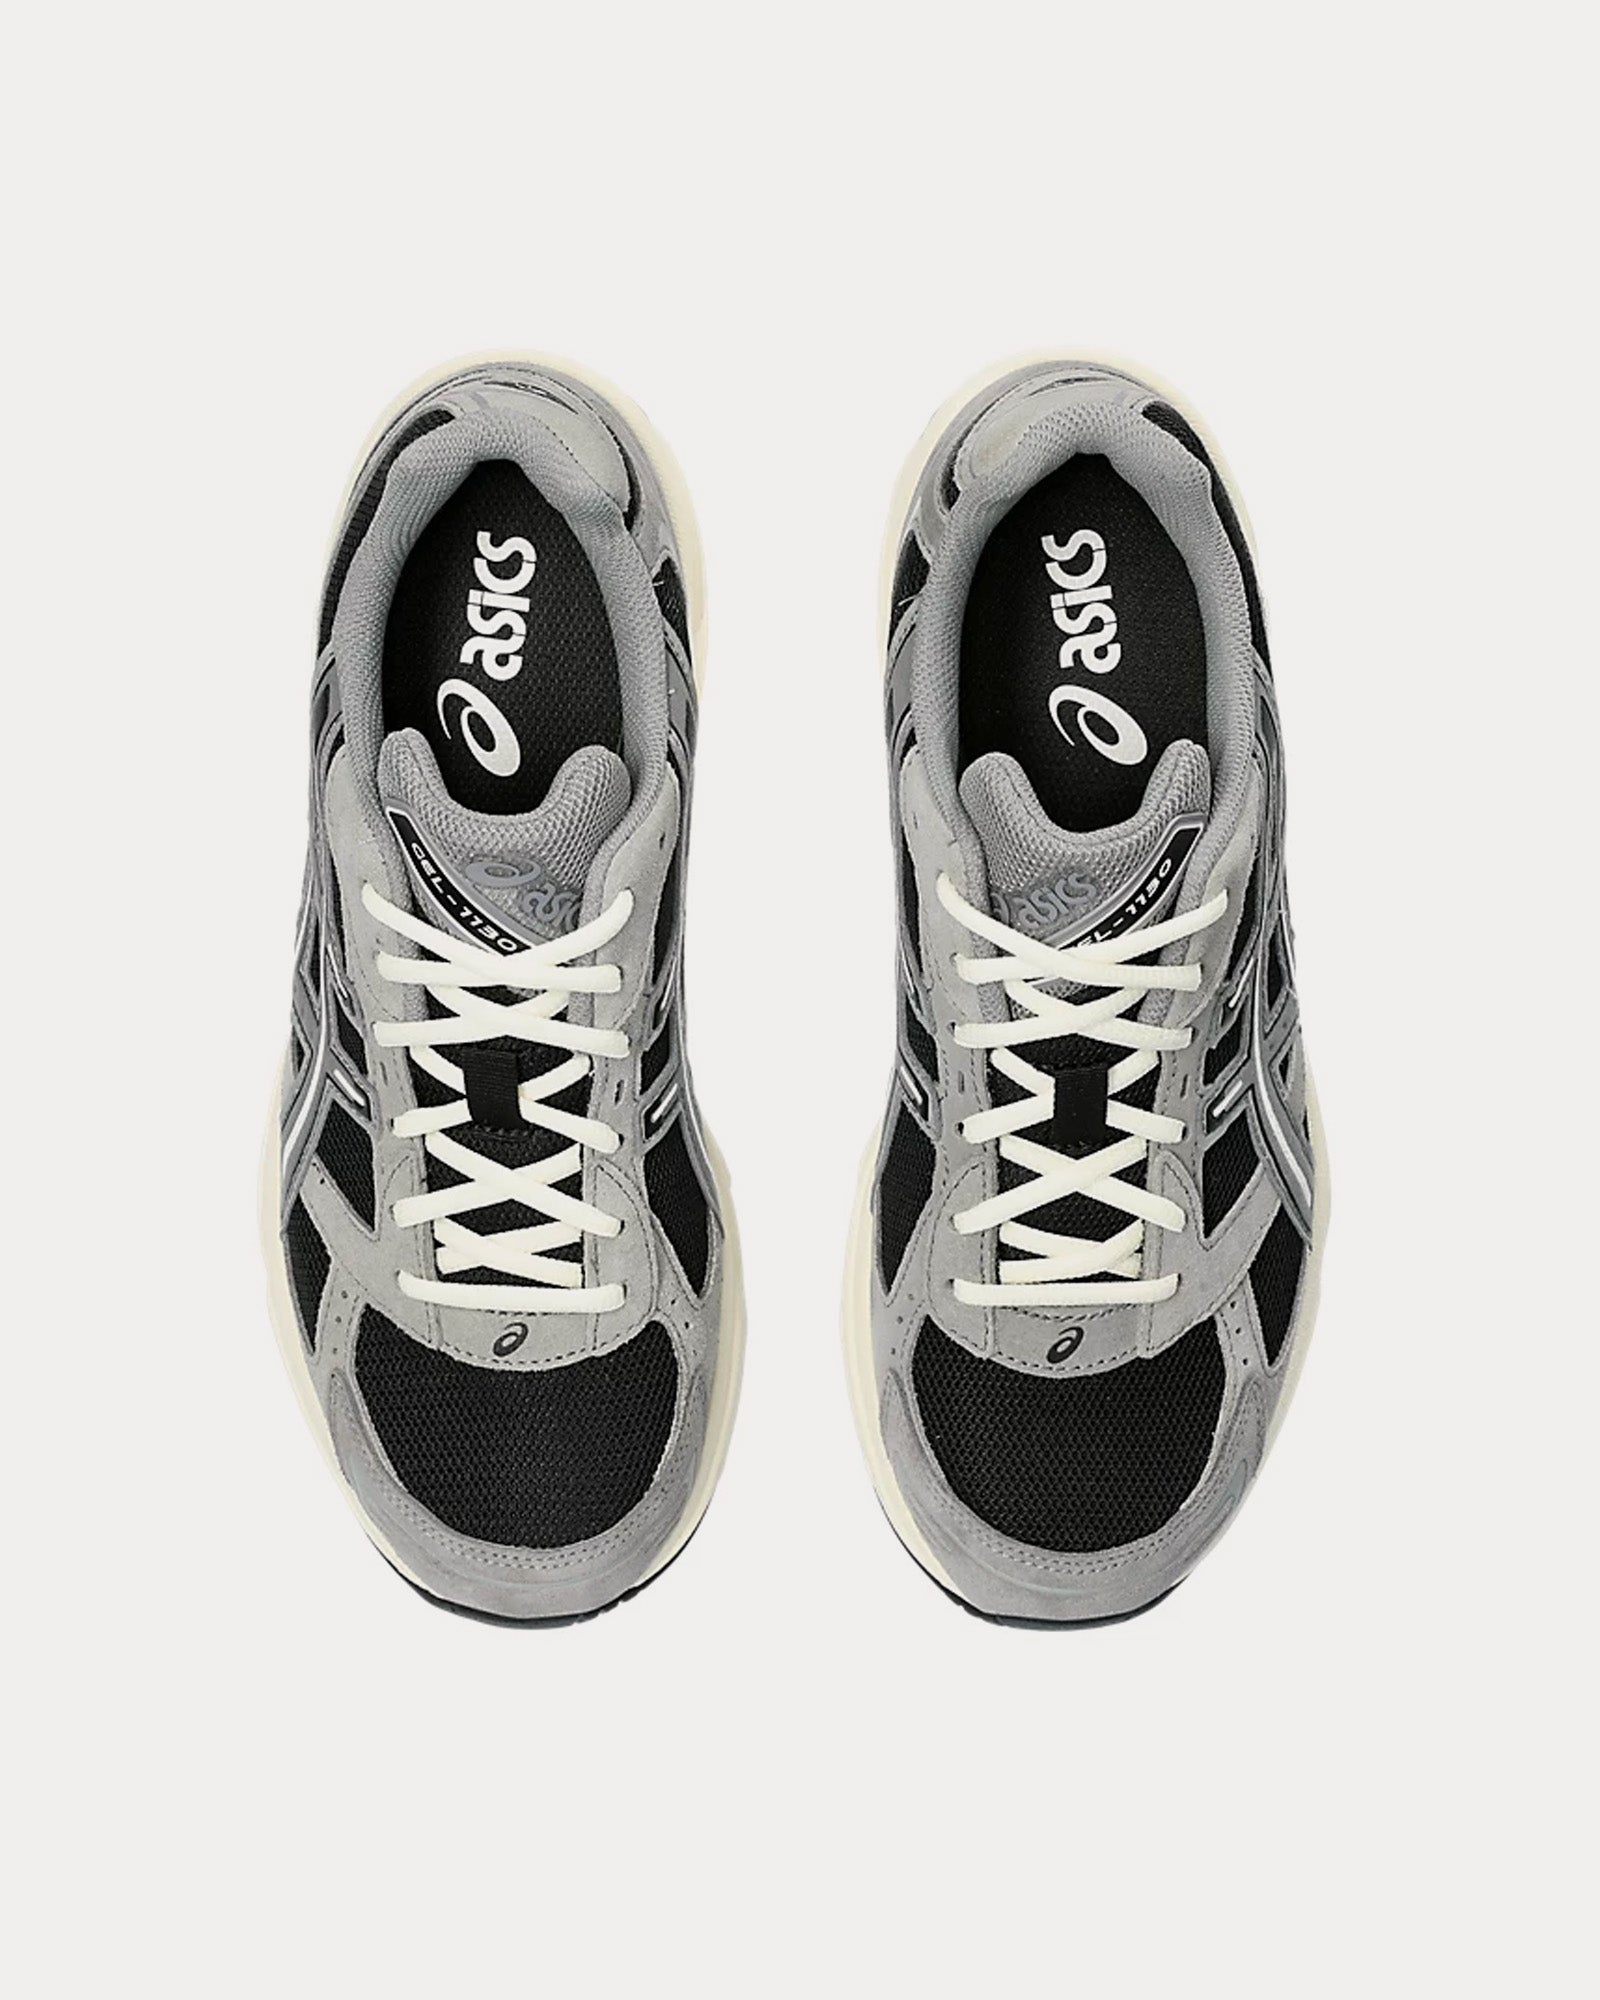 Asics Gel-1130 Black / Carbon Low Top Sneakers - Sneak in Peace